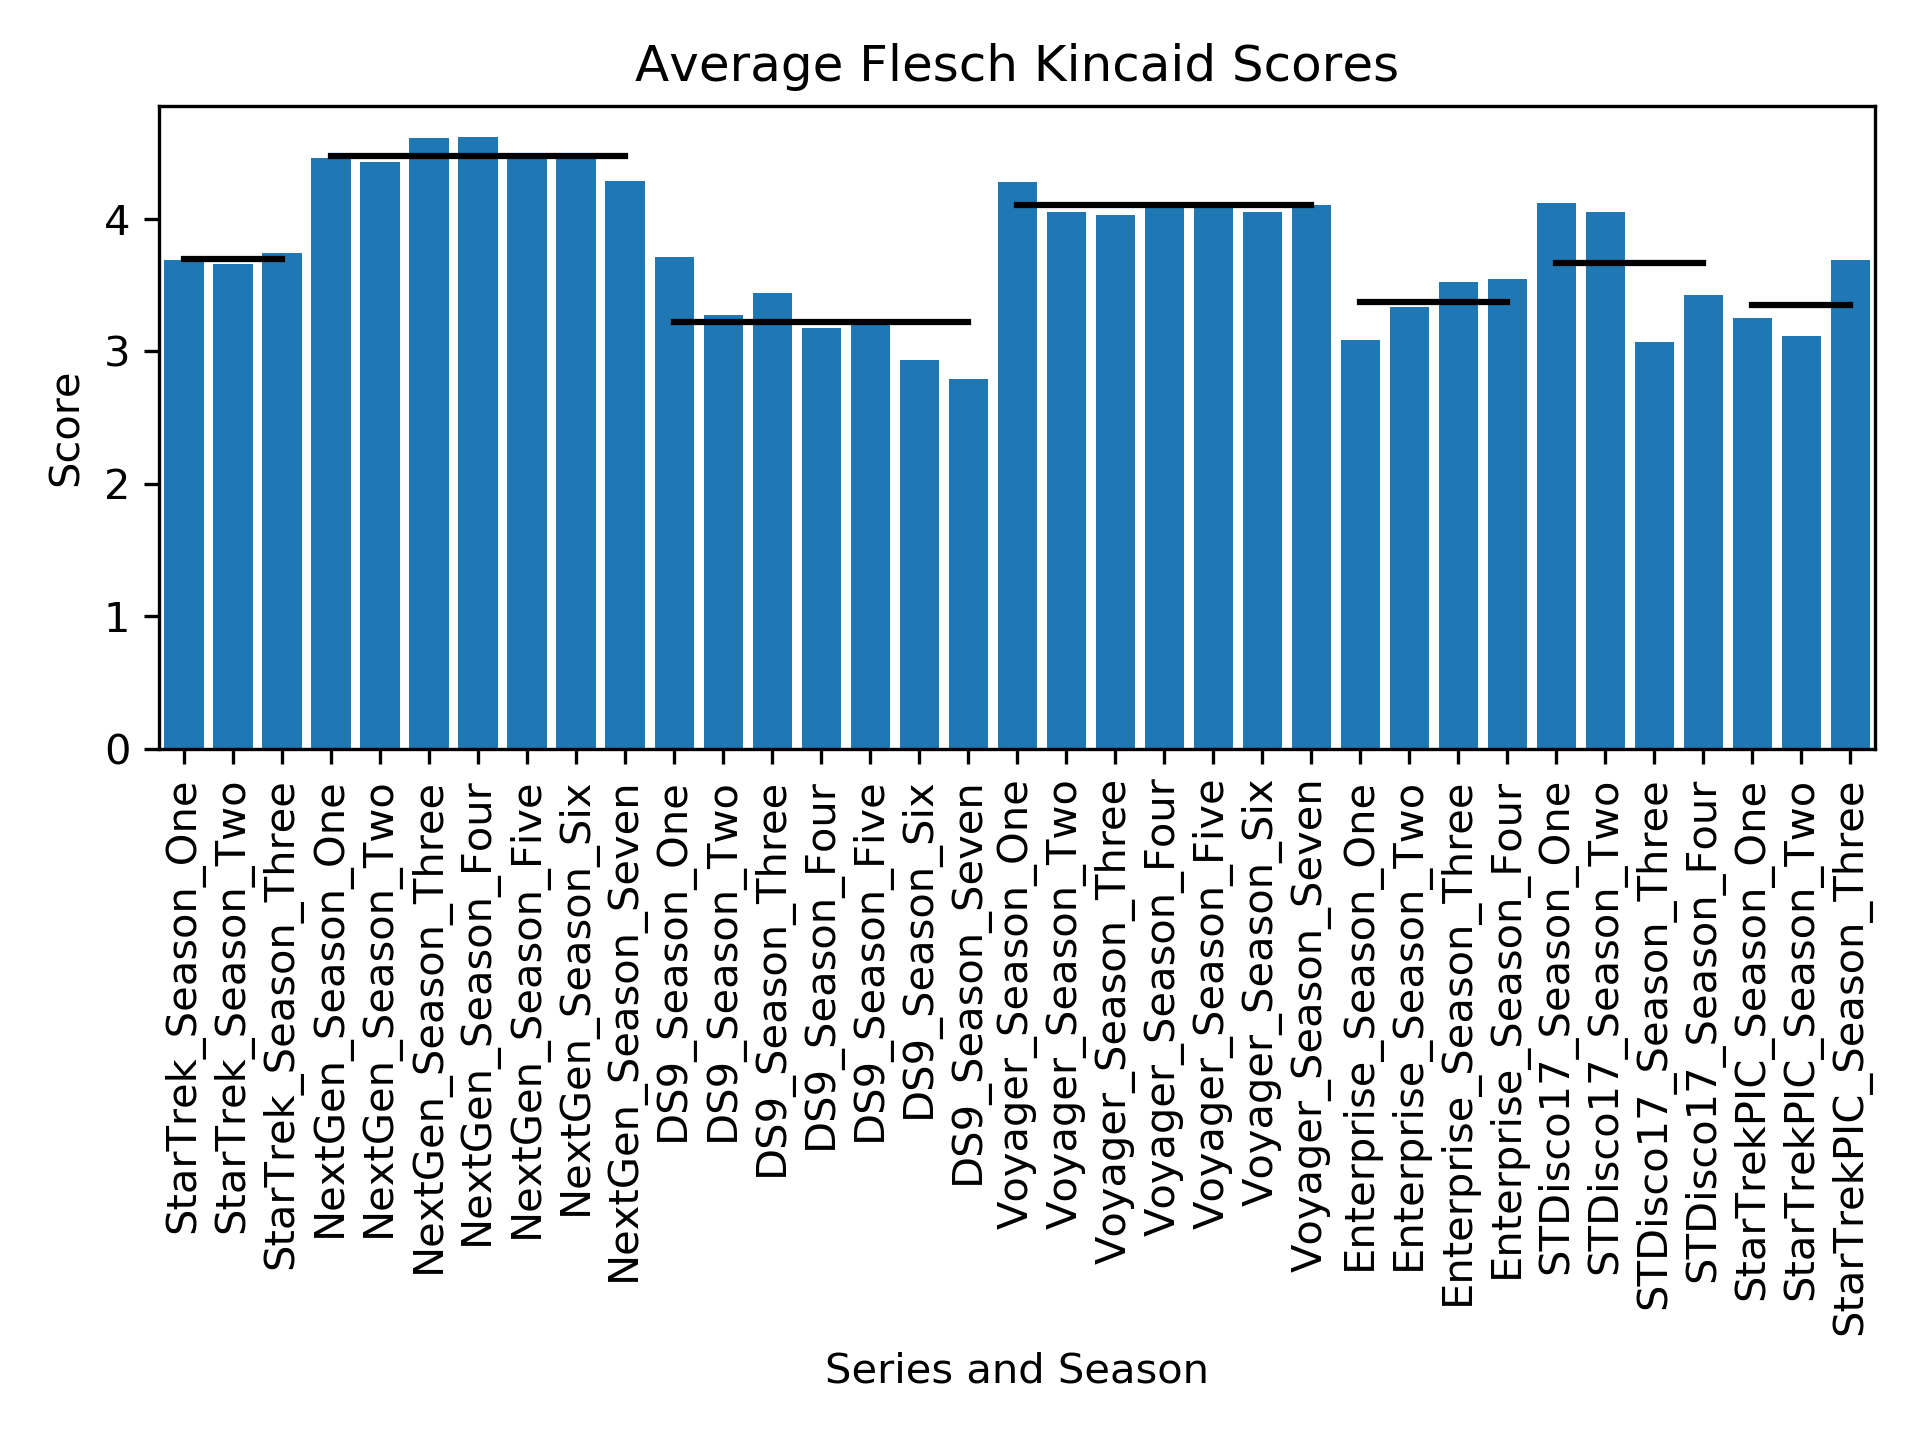 Flesch Kincaid scores